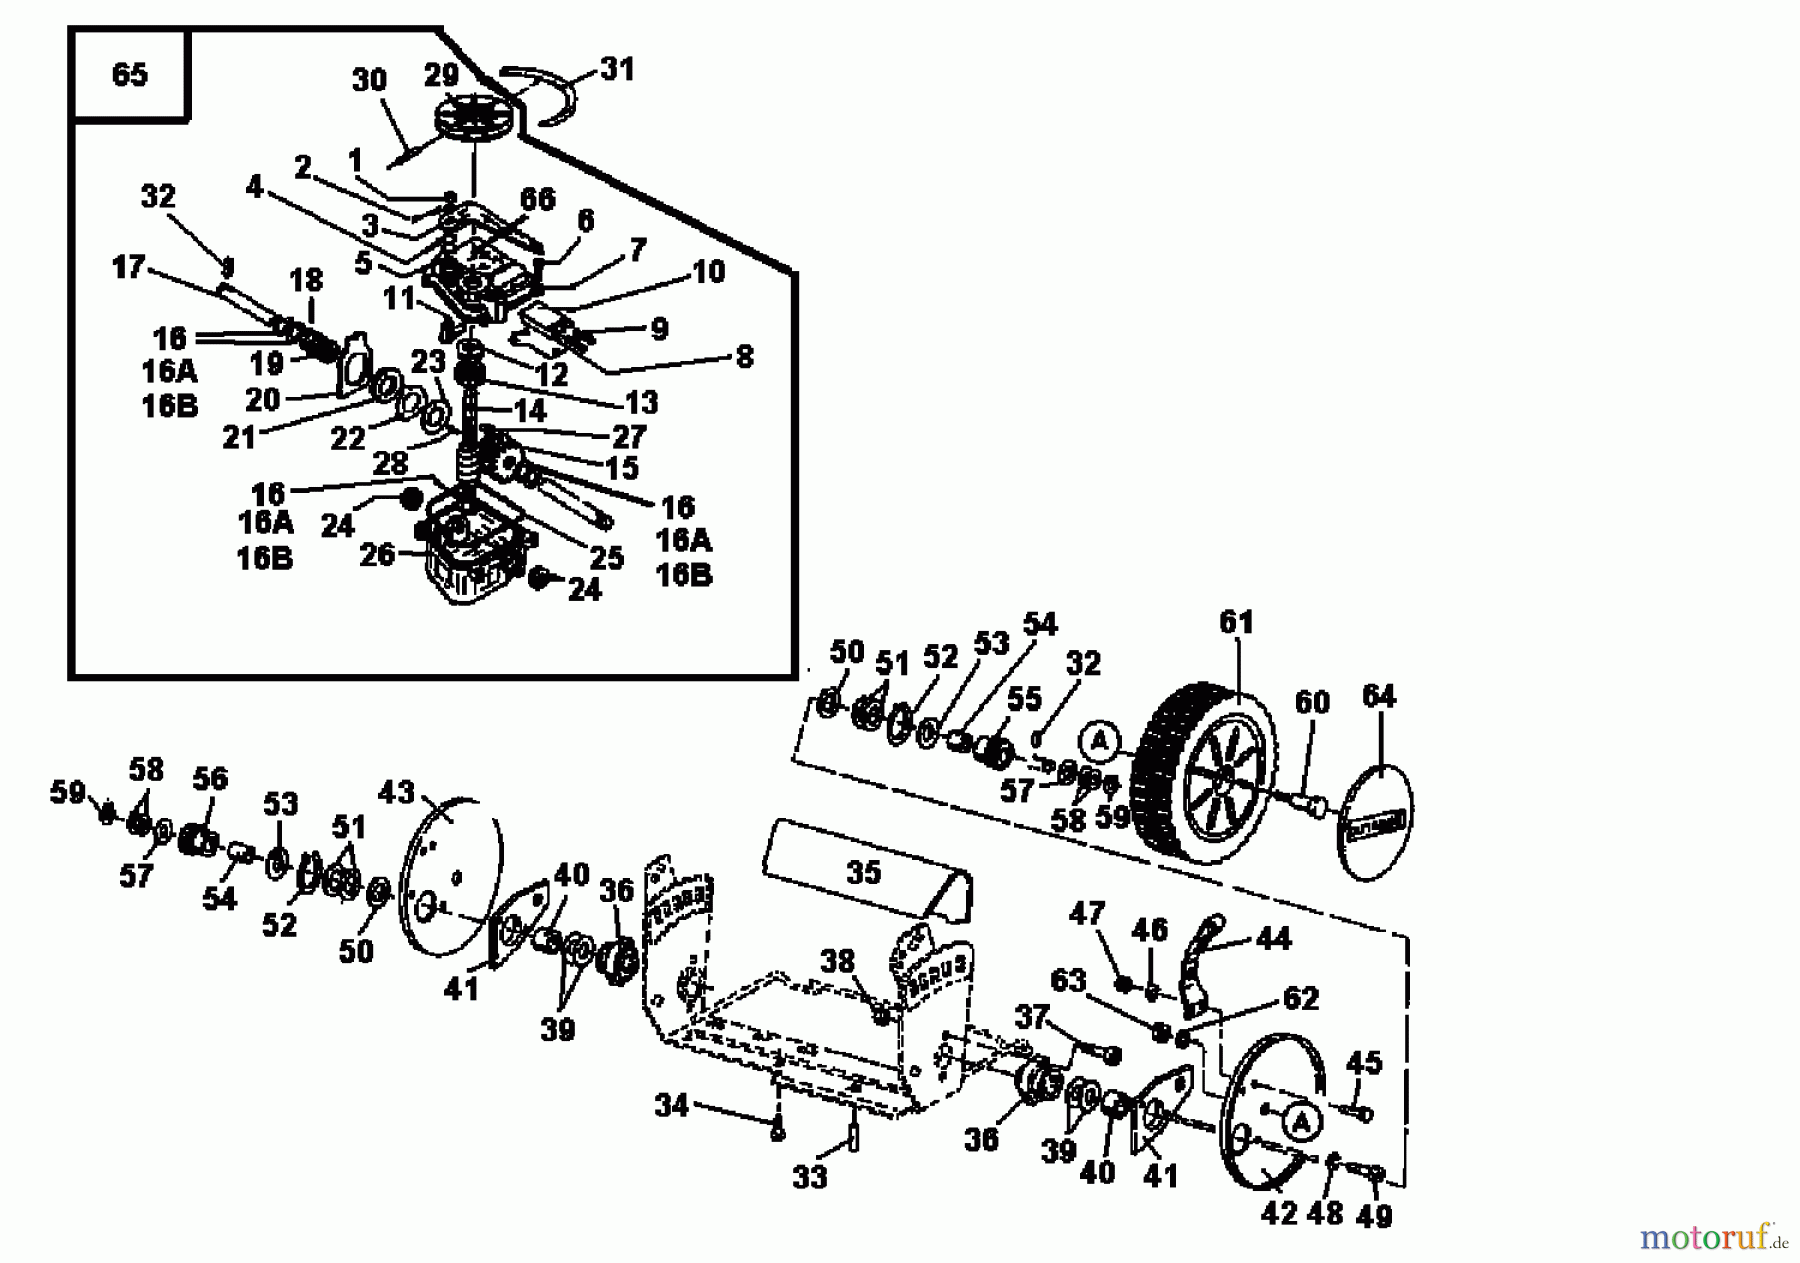  Gutbrod Petrol mower self propelled ECO BR 04033.03  (1996) Gearbox, Wheels